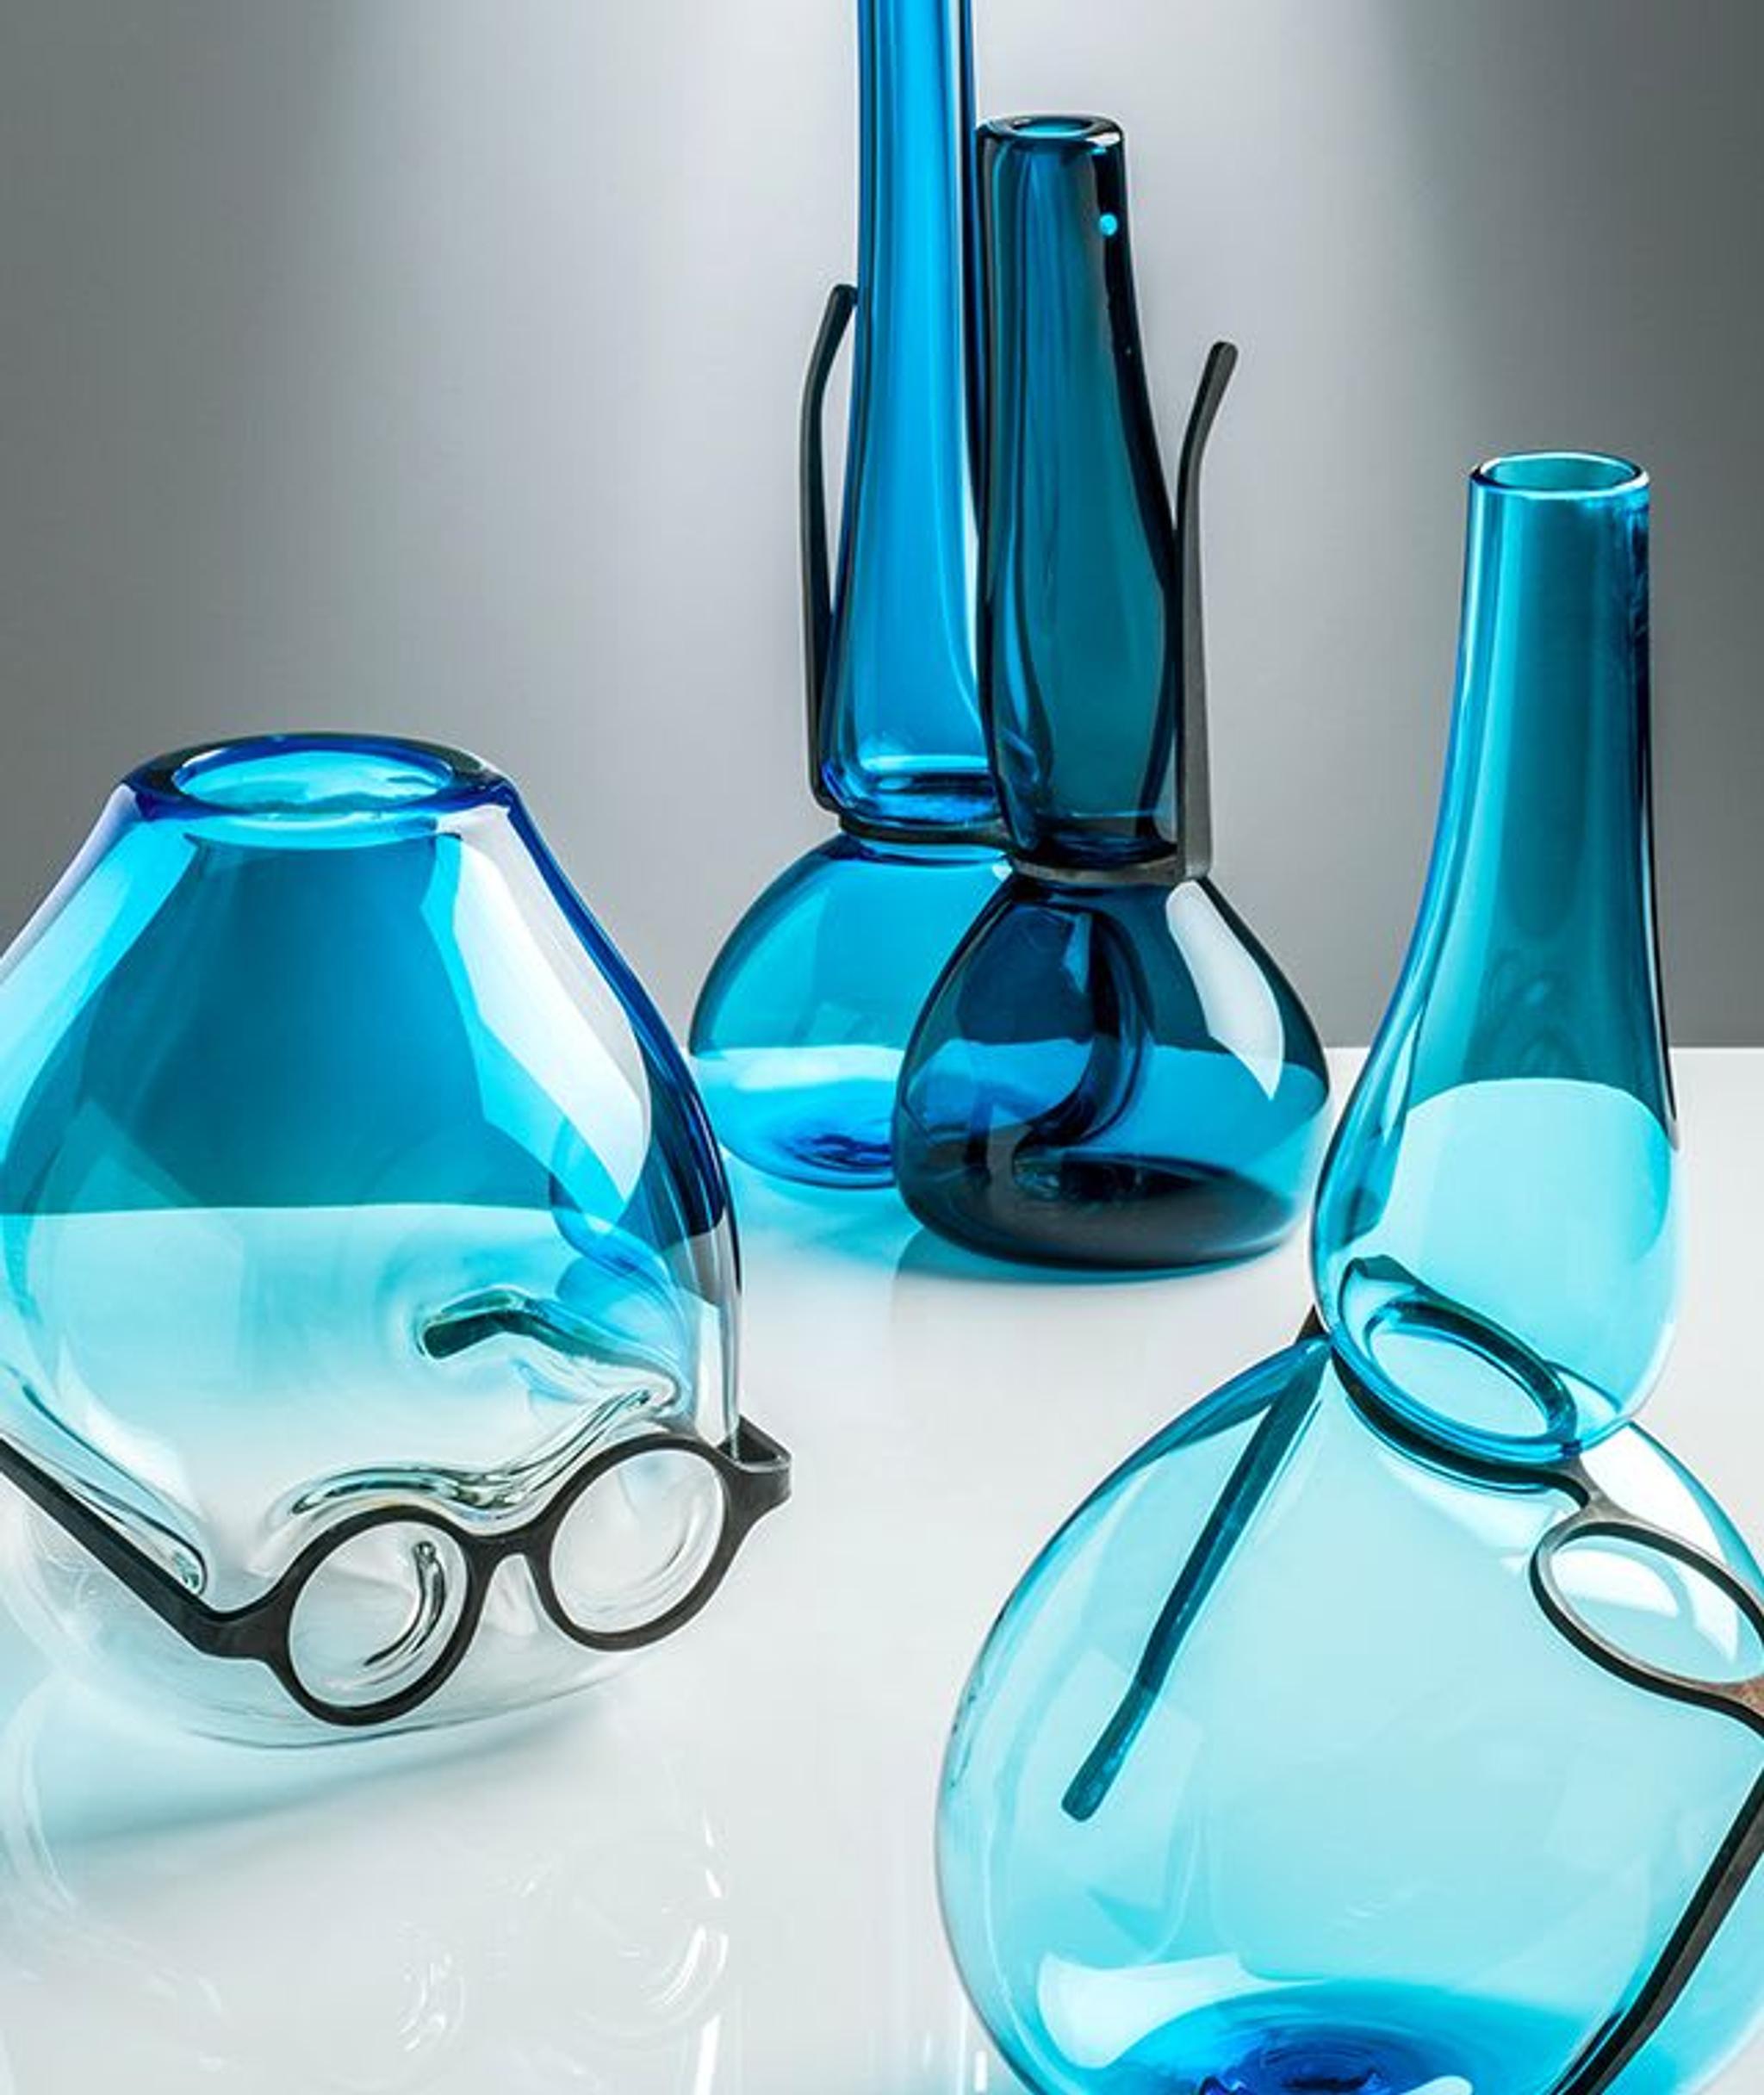 Where Are My Glasses? Under Vase By Ron Arad Studio - Venini